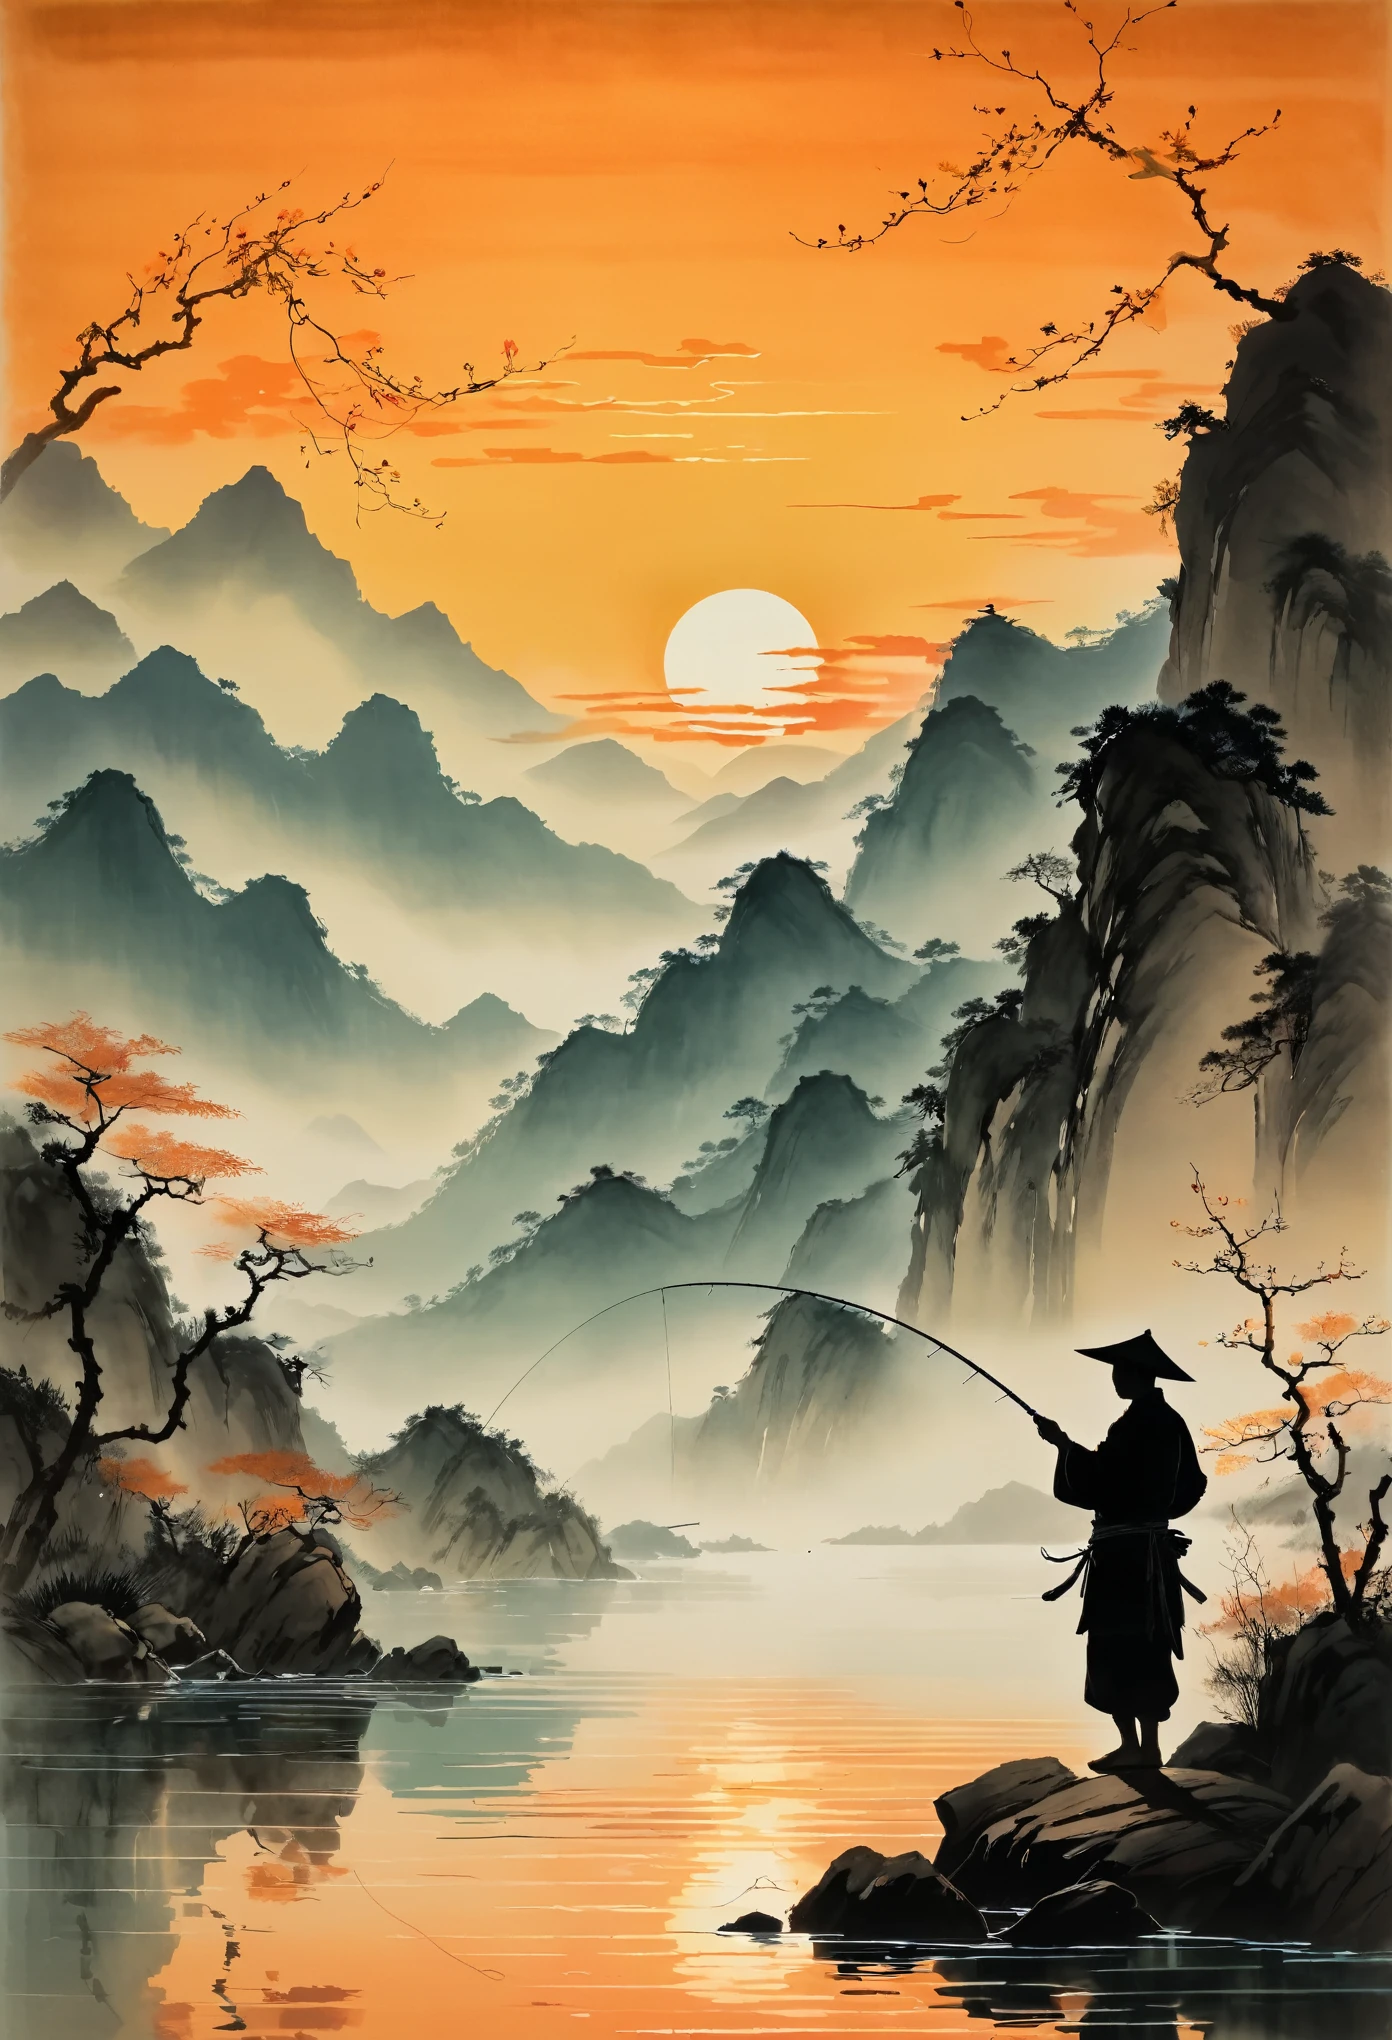 Une silhouette d&#39;un pêcheur jetant sa ligne dans l&#39;eau au coucher du soleil, avec des montagnes en arrière-plan et des eaux calmes reflétant des teintes orange. La scène est représentée dans le style de l&#39;artiste chinois Zhang Daqian.. 